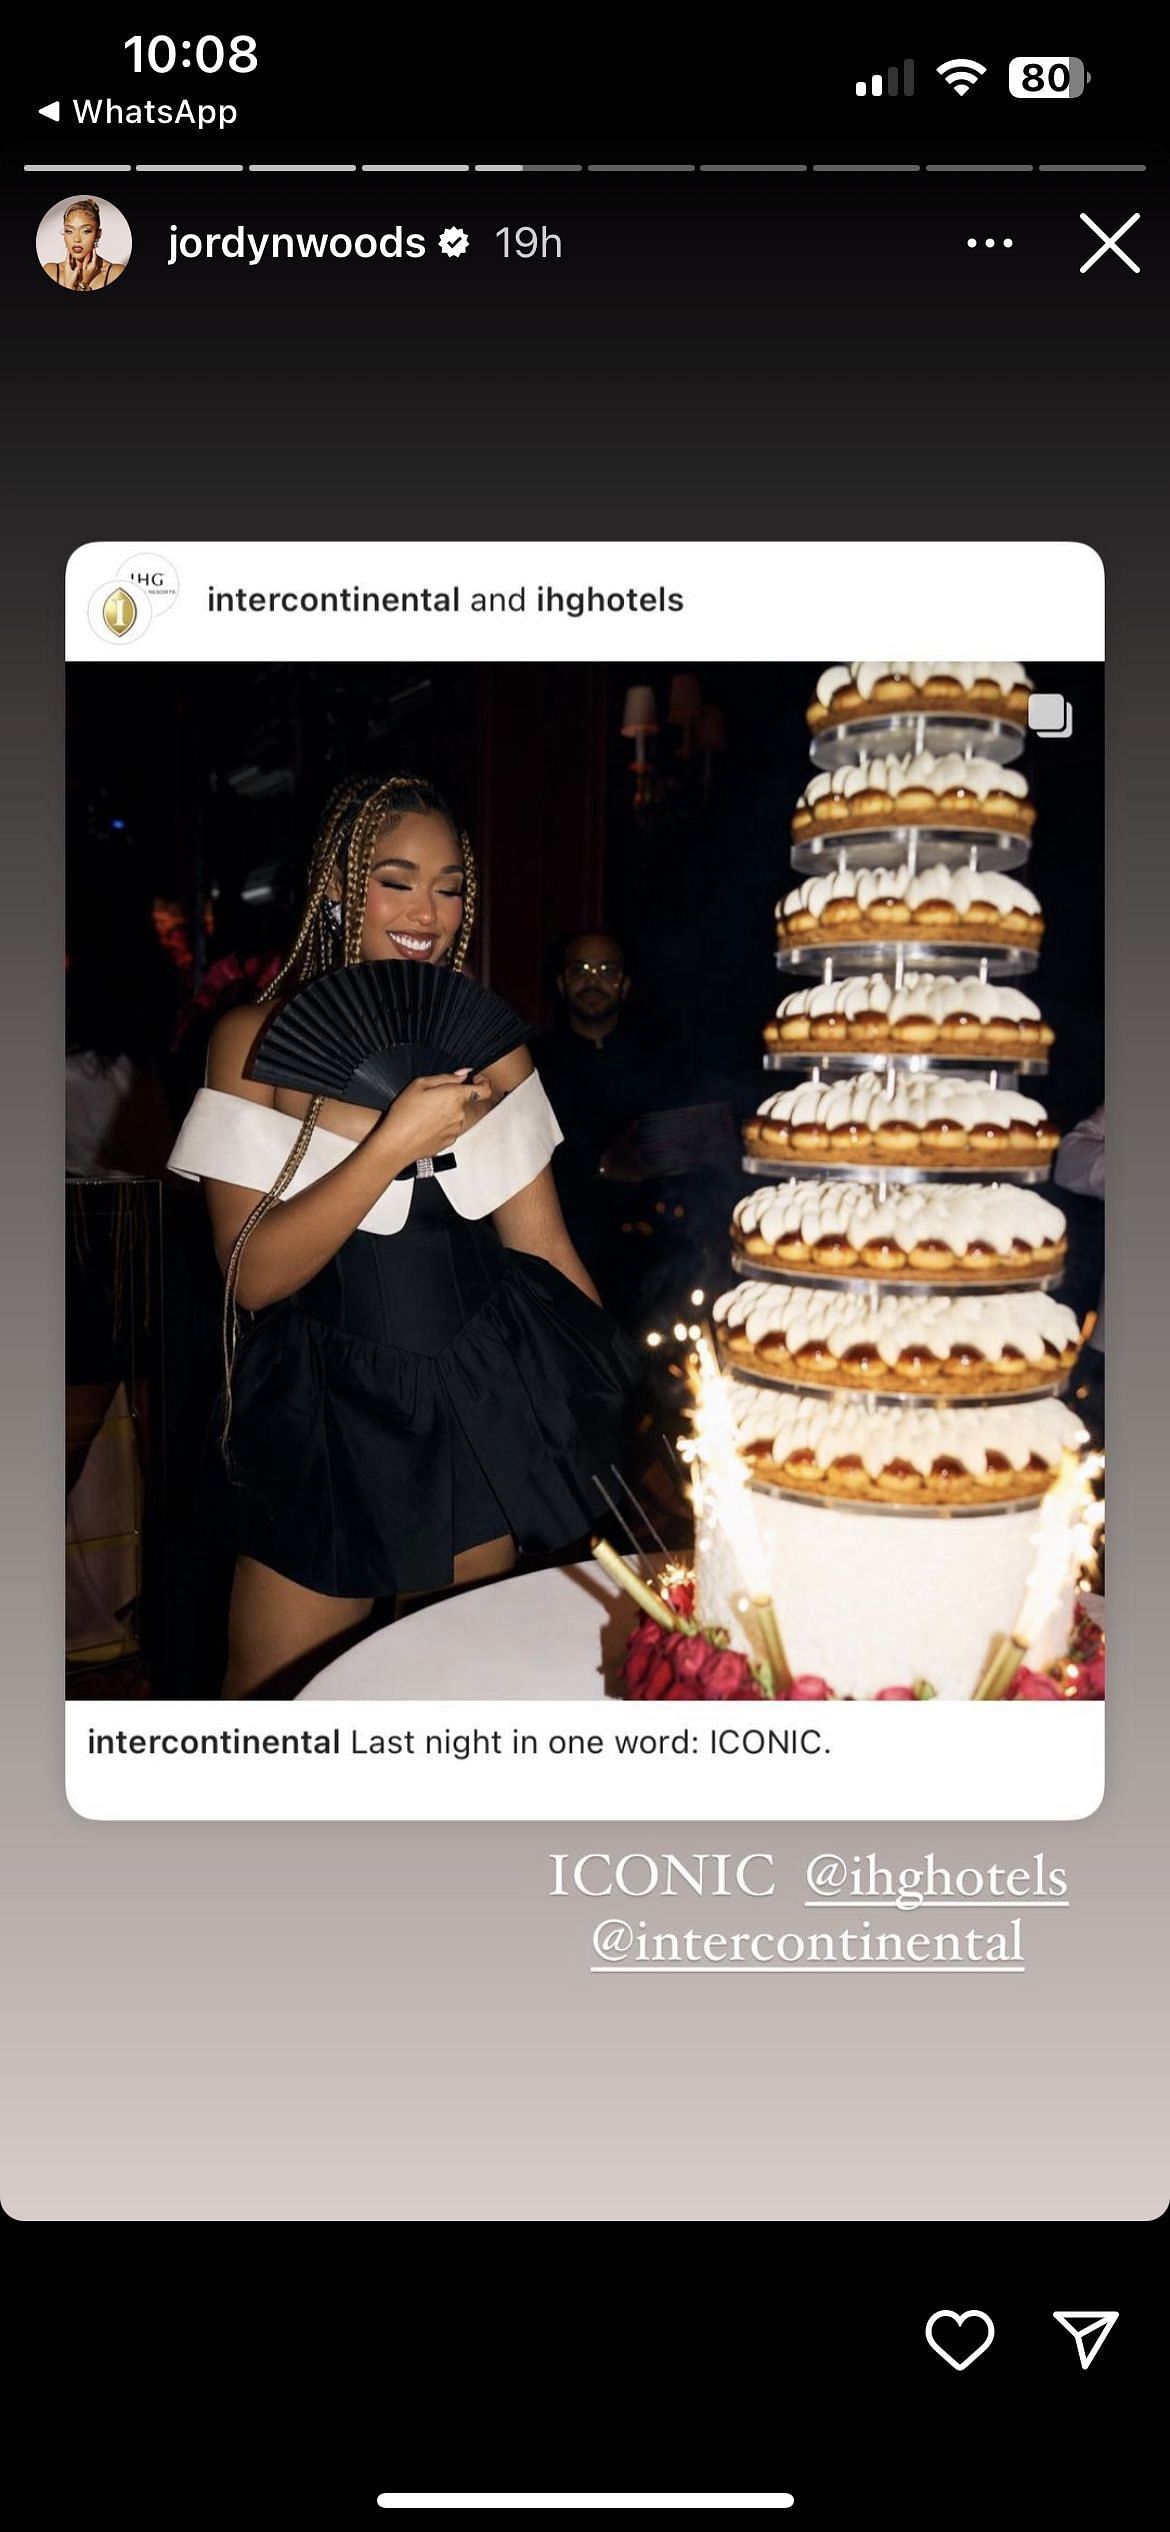 Jordyn Woods and her birthday cake in Paris.